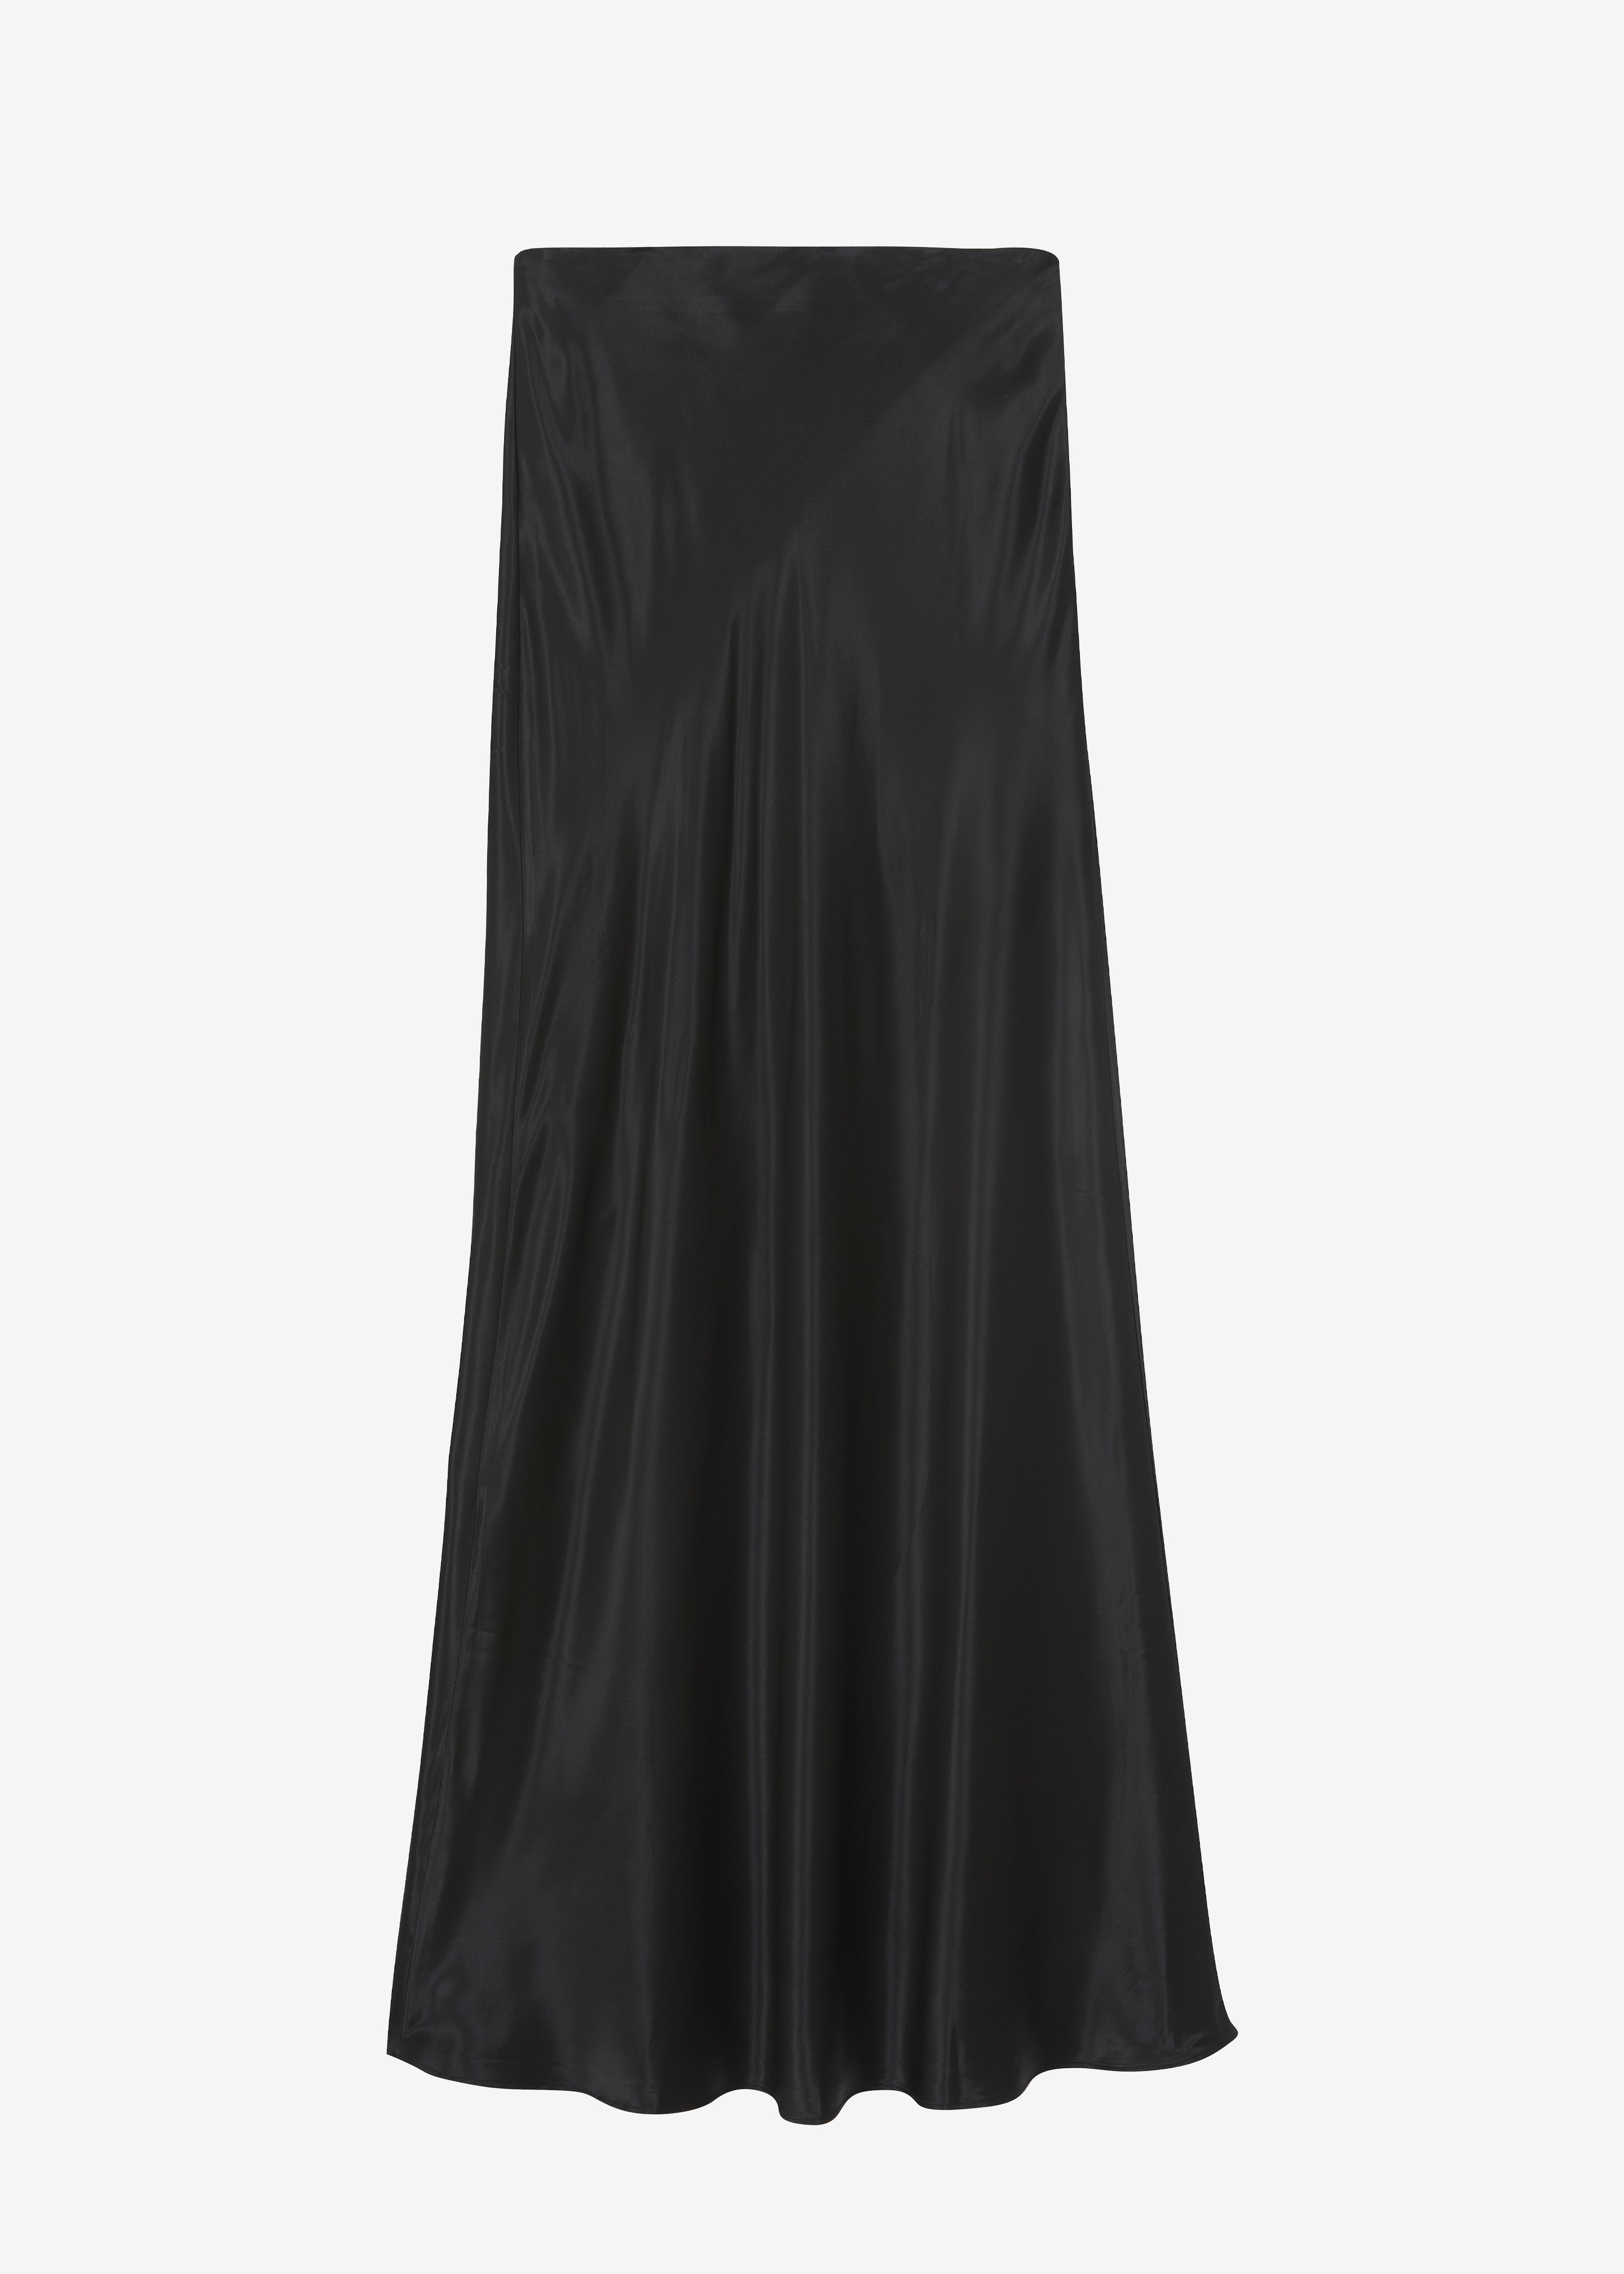 Renesmee Satin Skirt - Black - 9